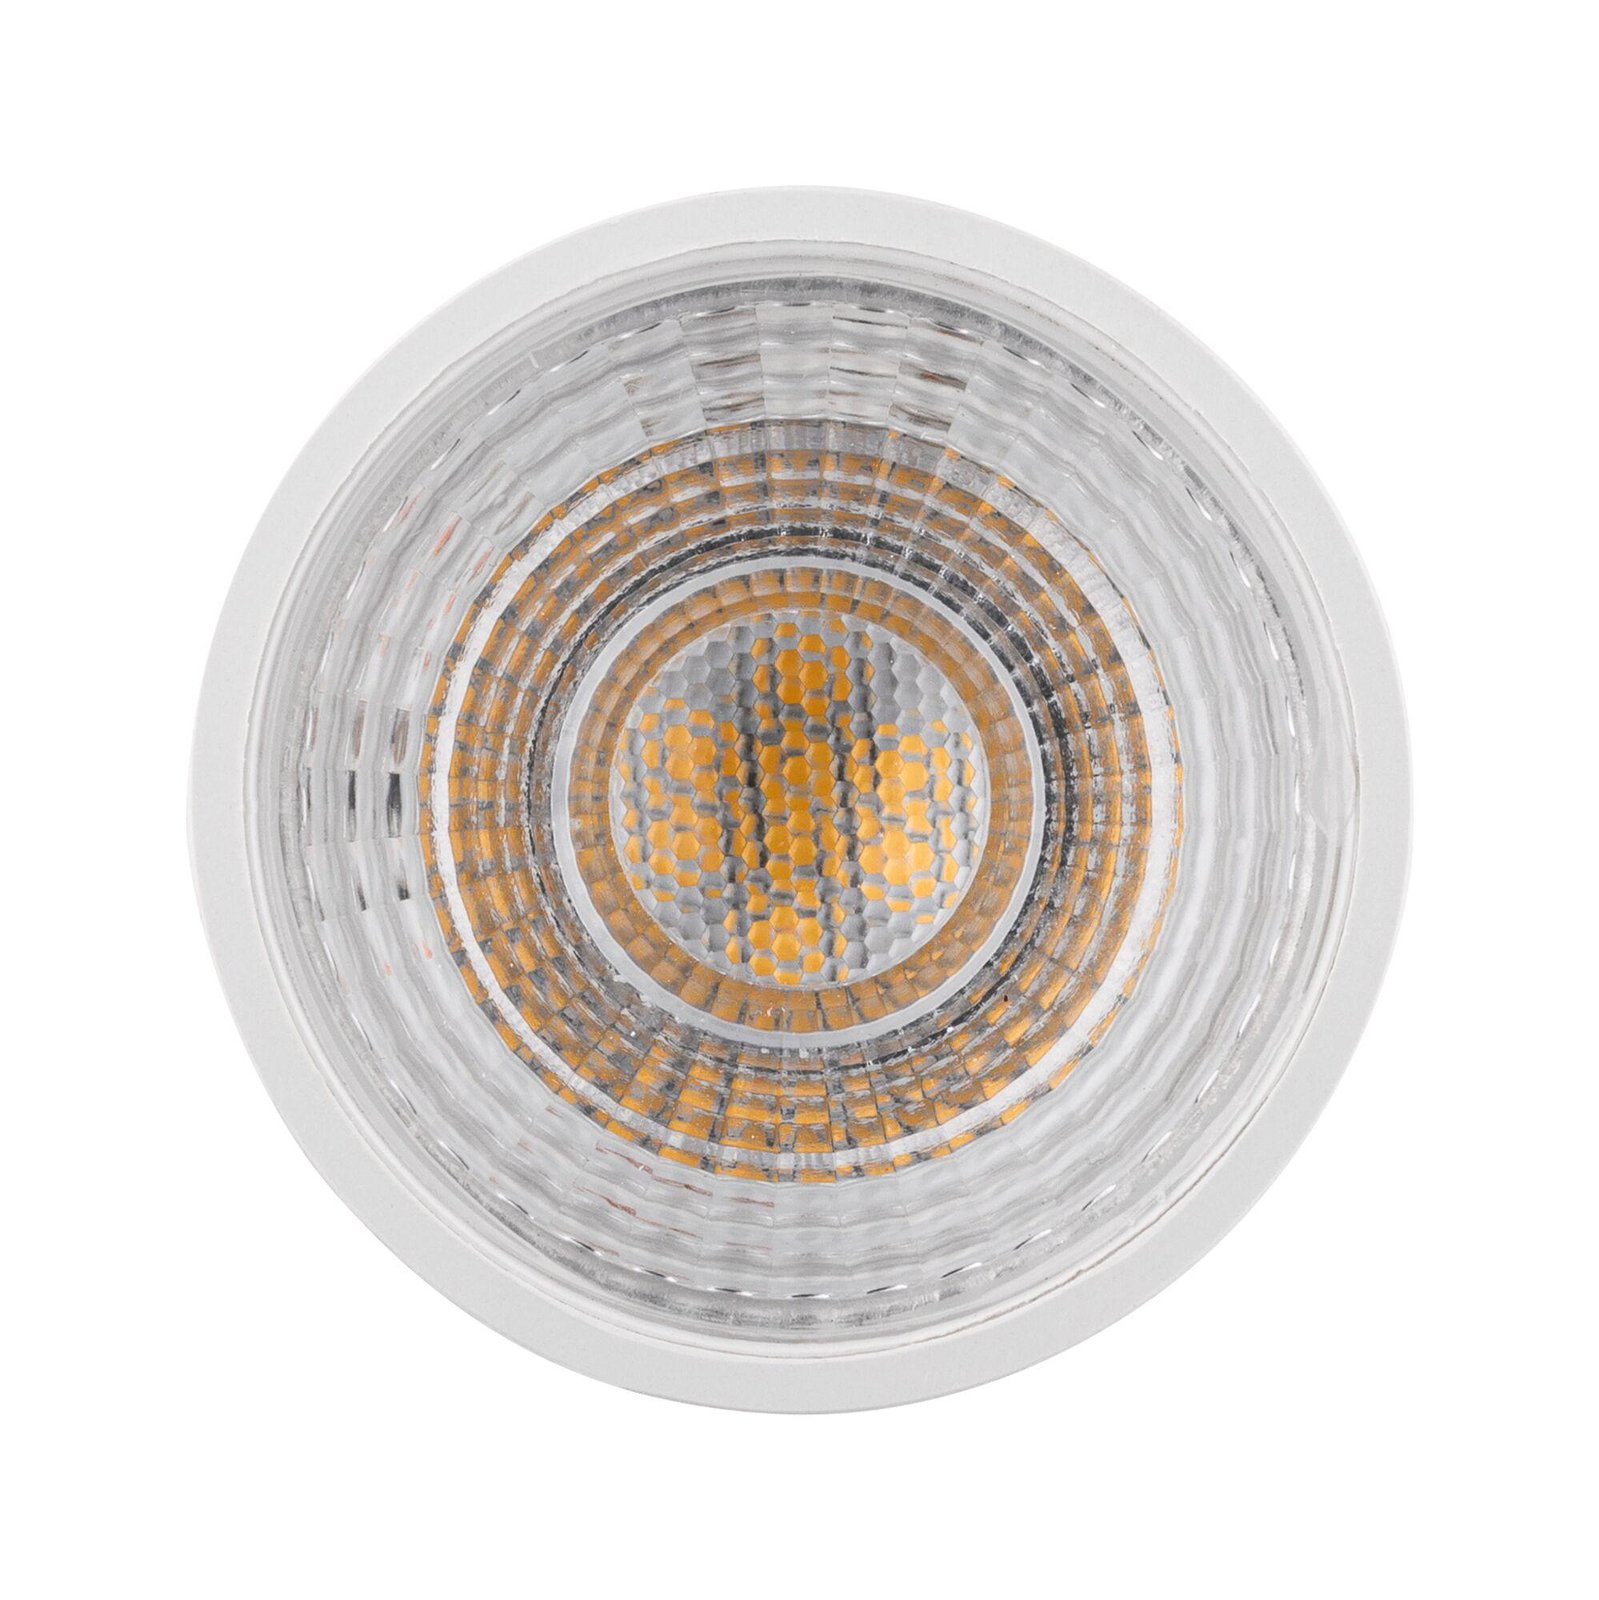 Paulmann LED reflectorlamp 4.000 K wit GU10 8 W dimbaar 36°